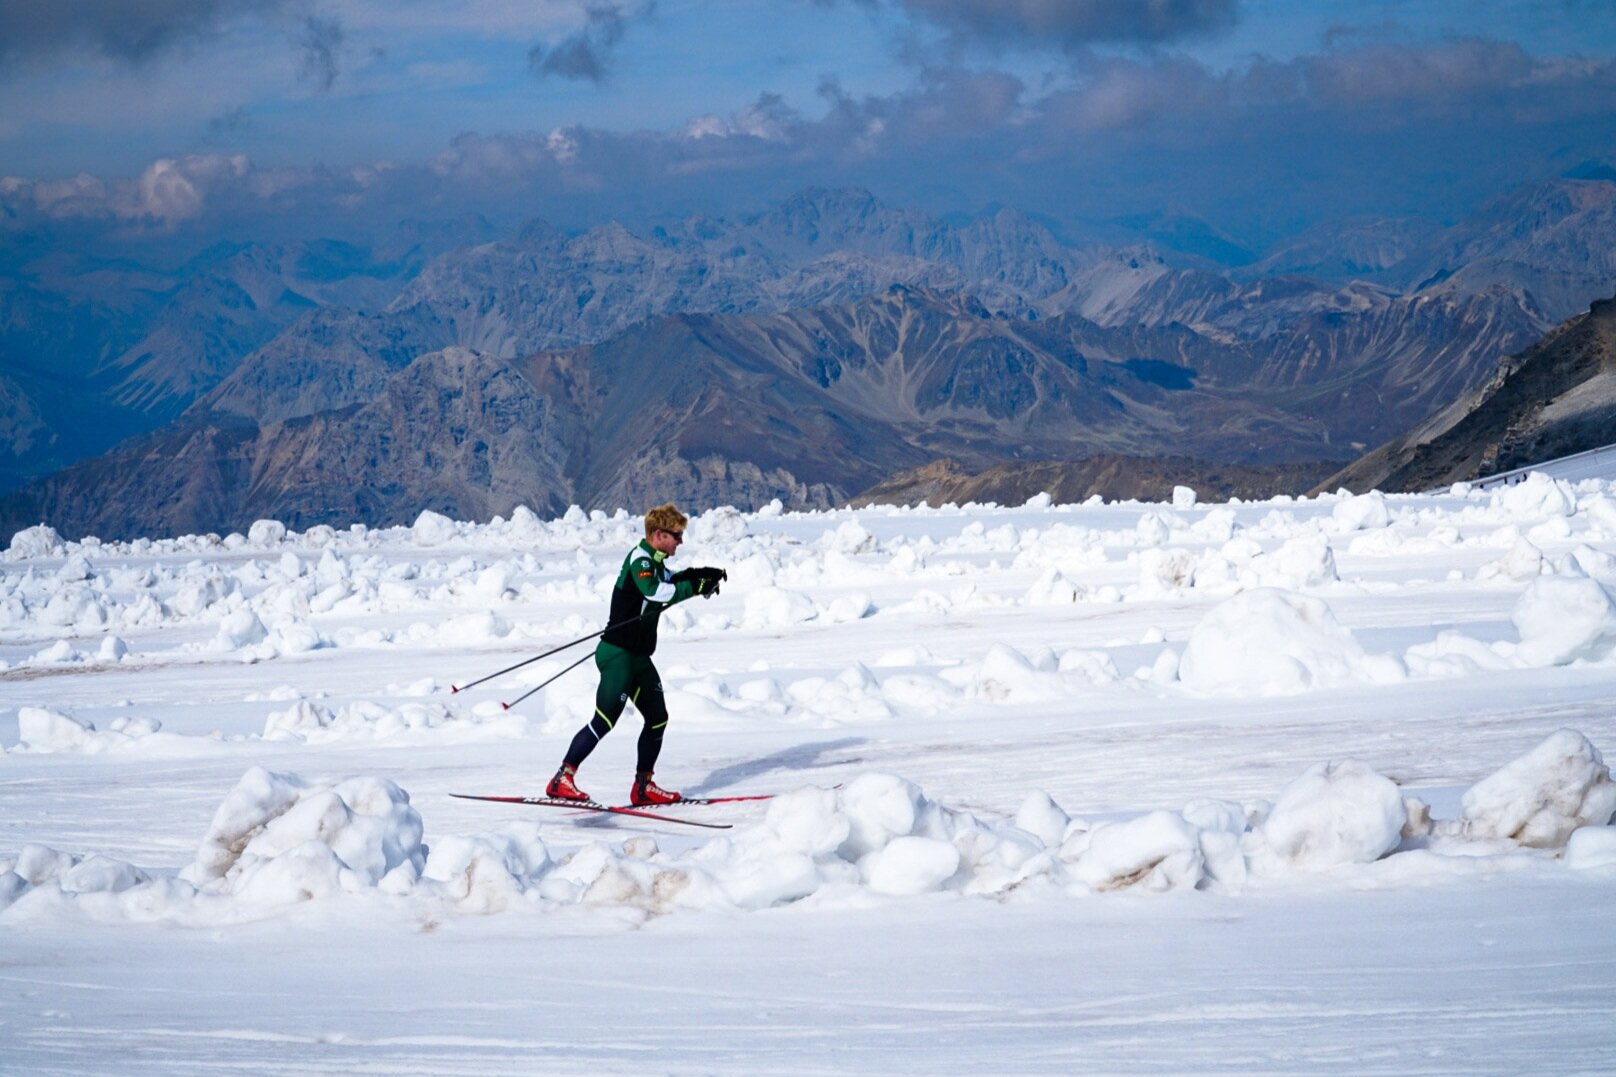 lumi-experiences-ski-picking-2.jpg